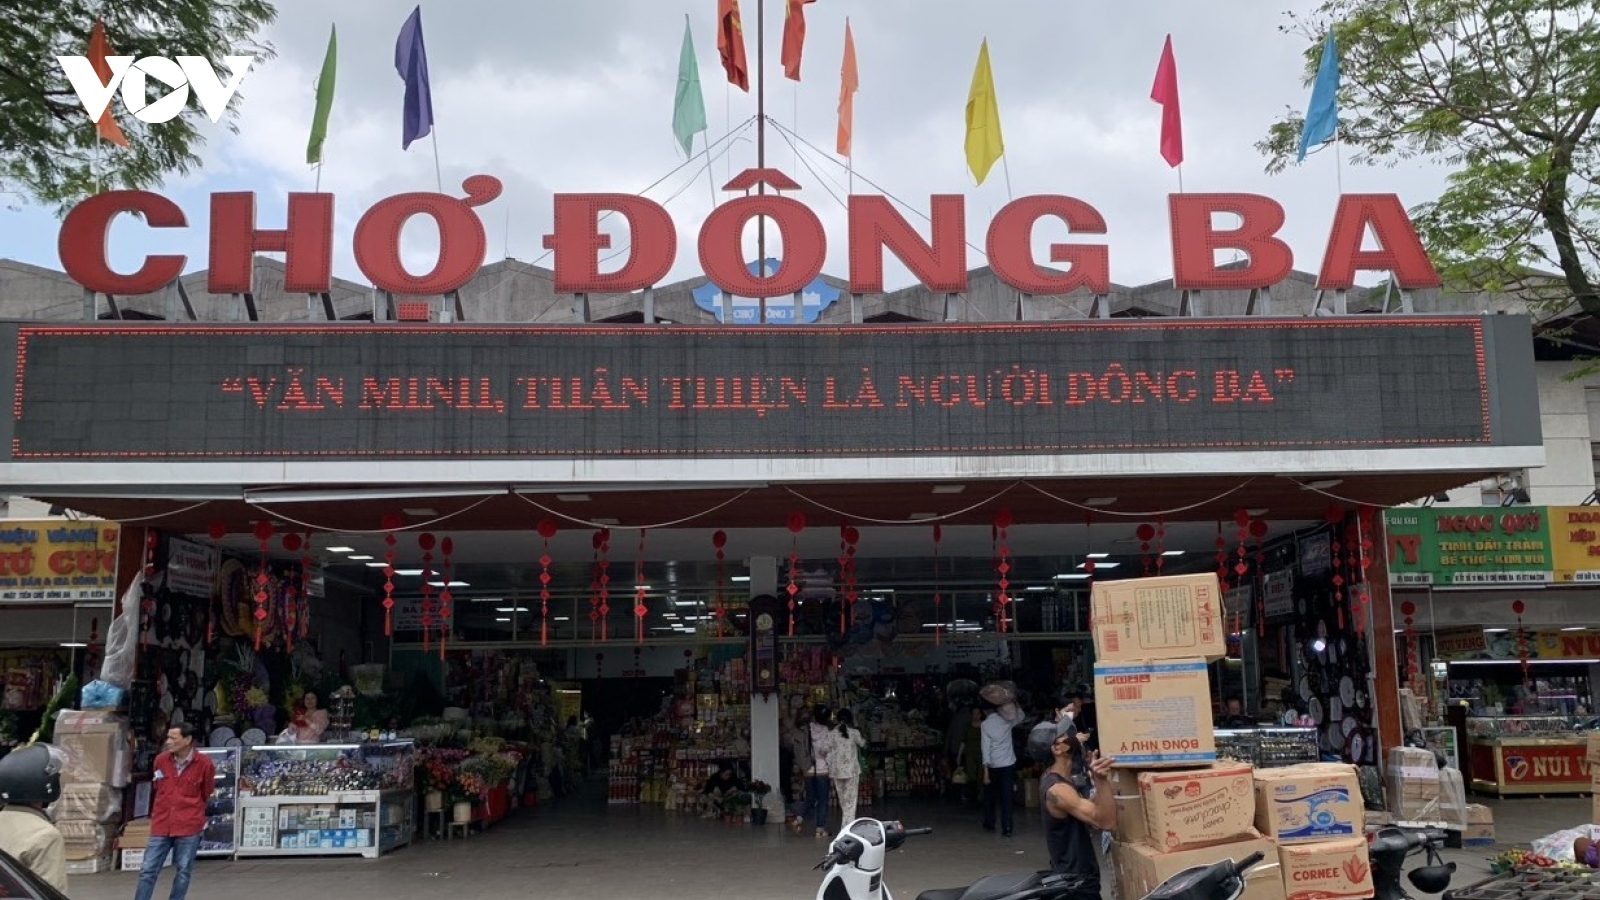 Thưởng cho người phát hiện tiểu thương “chặt chém” ở chợ Đông Ba Huế